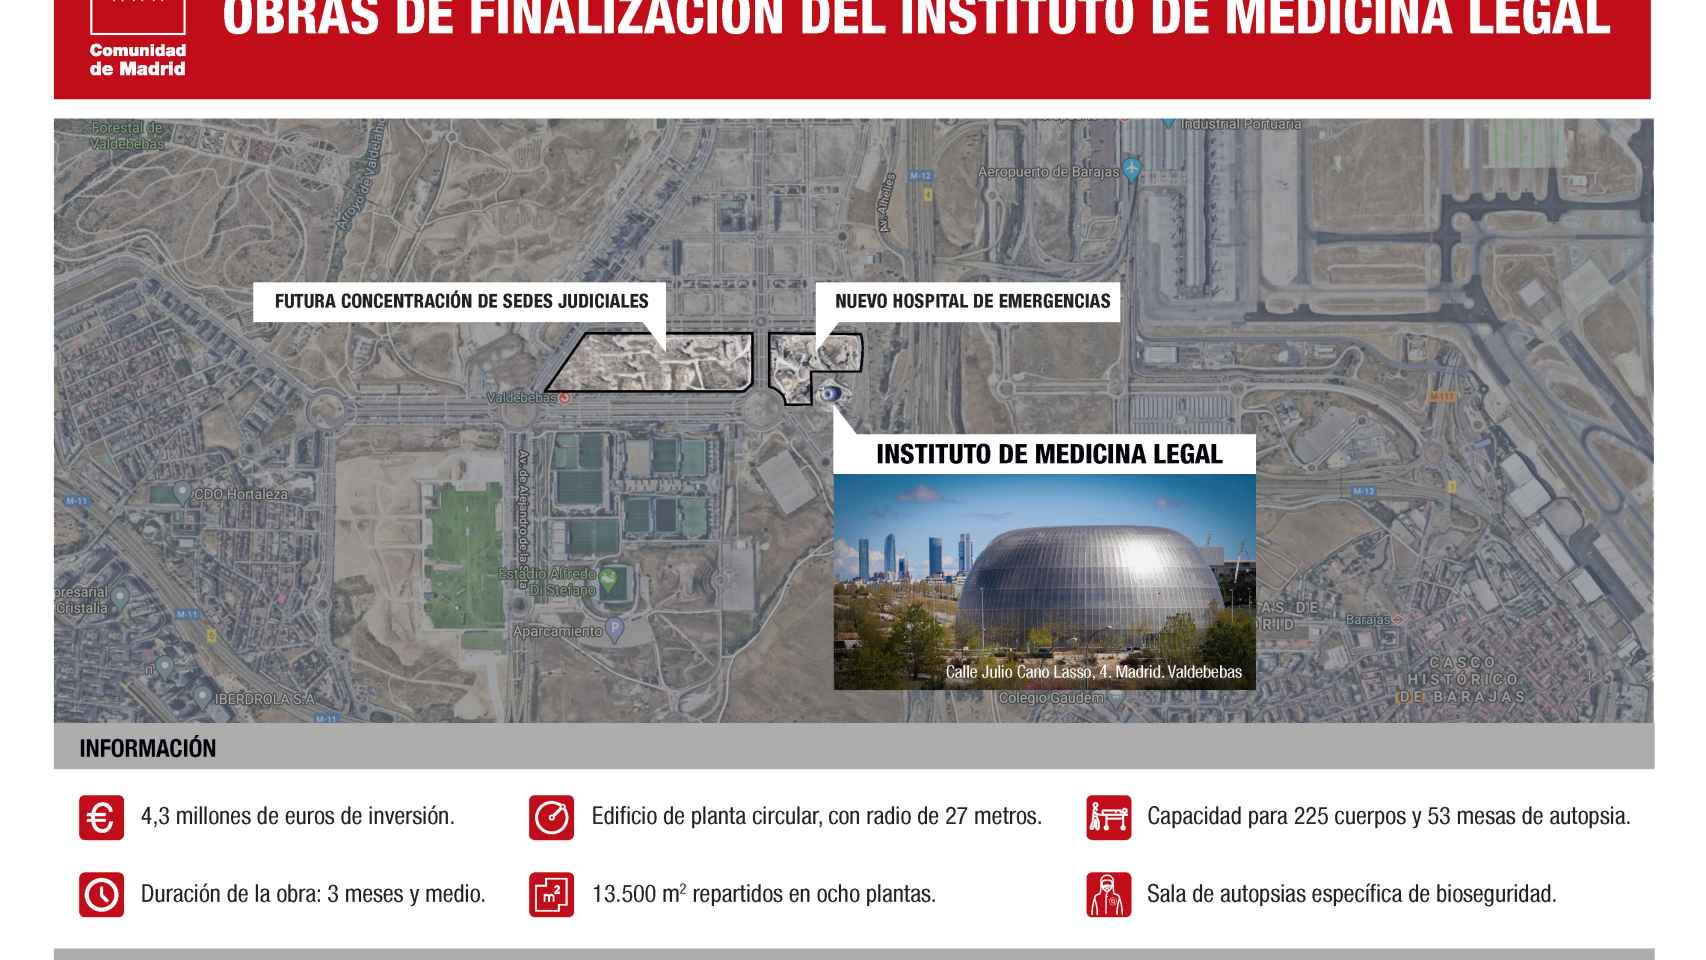 Infografía sobre la situación del hospital y el Instituto de Medicina Legal.